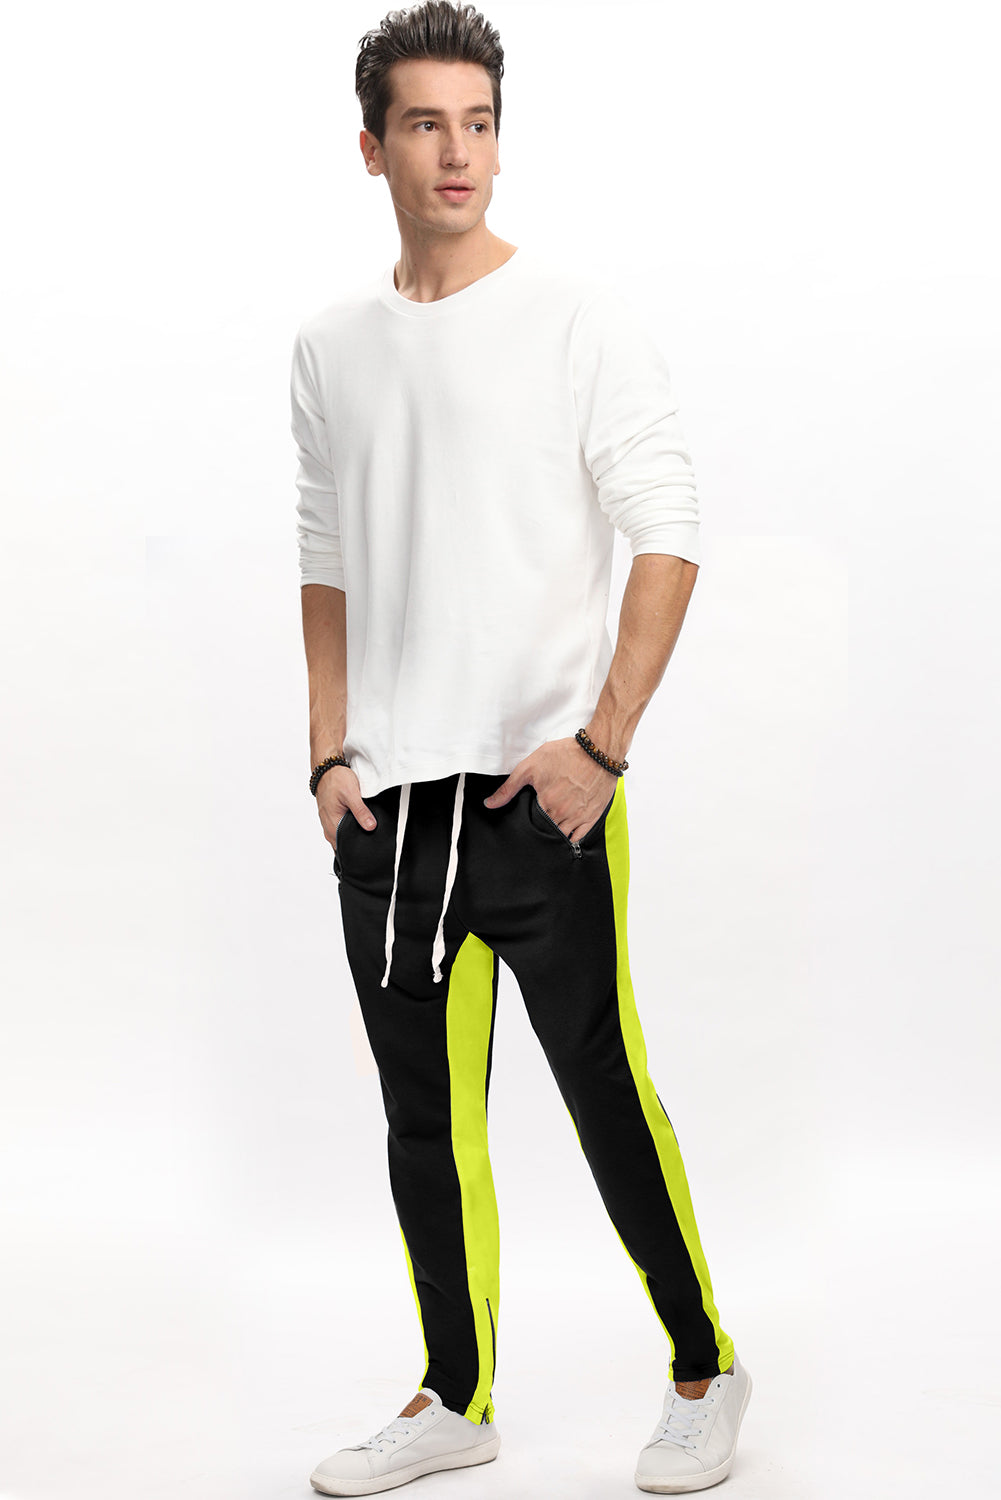 Yellow Colorblock Patchwork Zipper Casual Mens Joggers Men's Pants JT's Designer Fashion